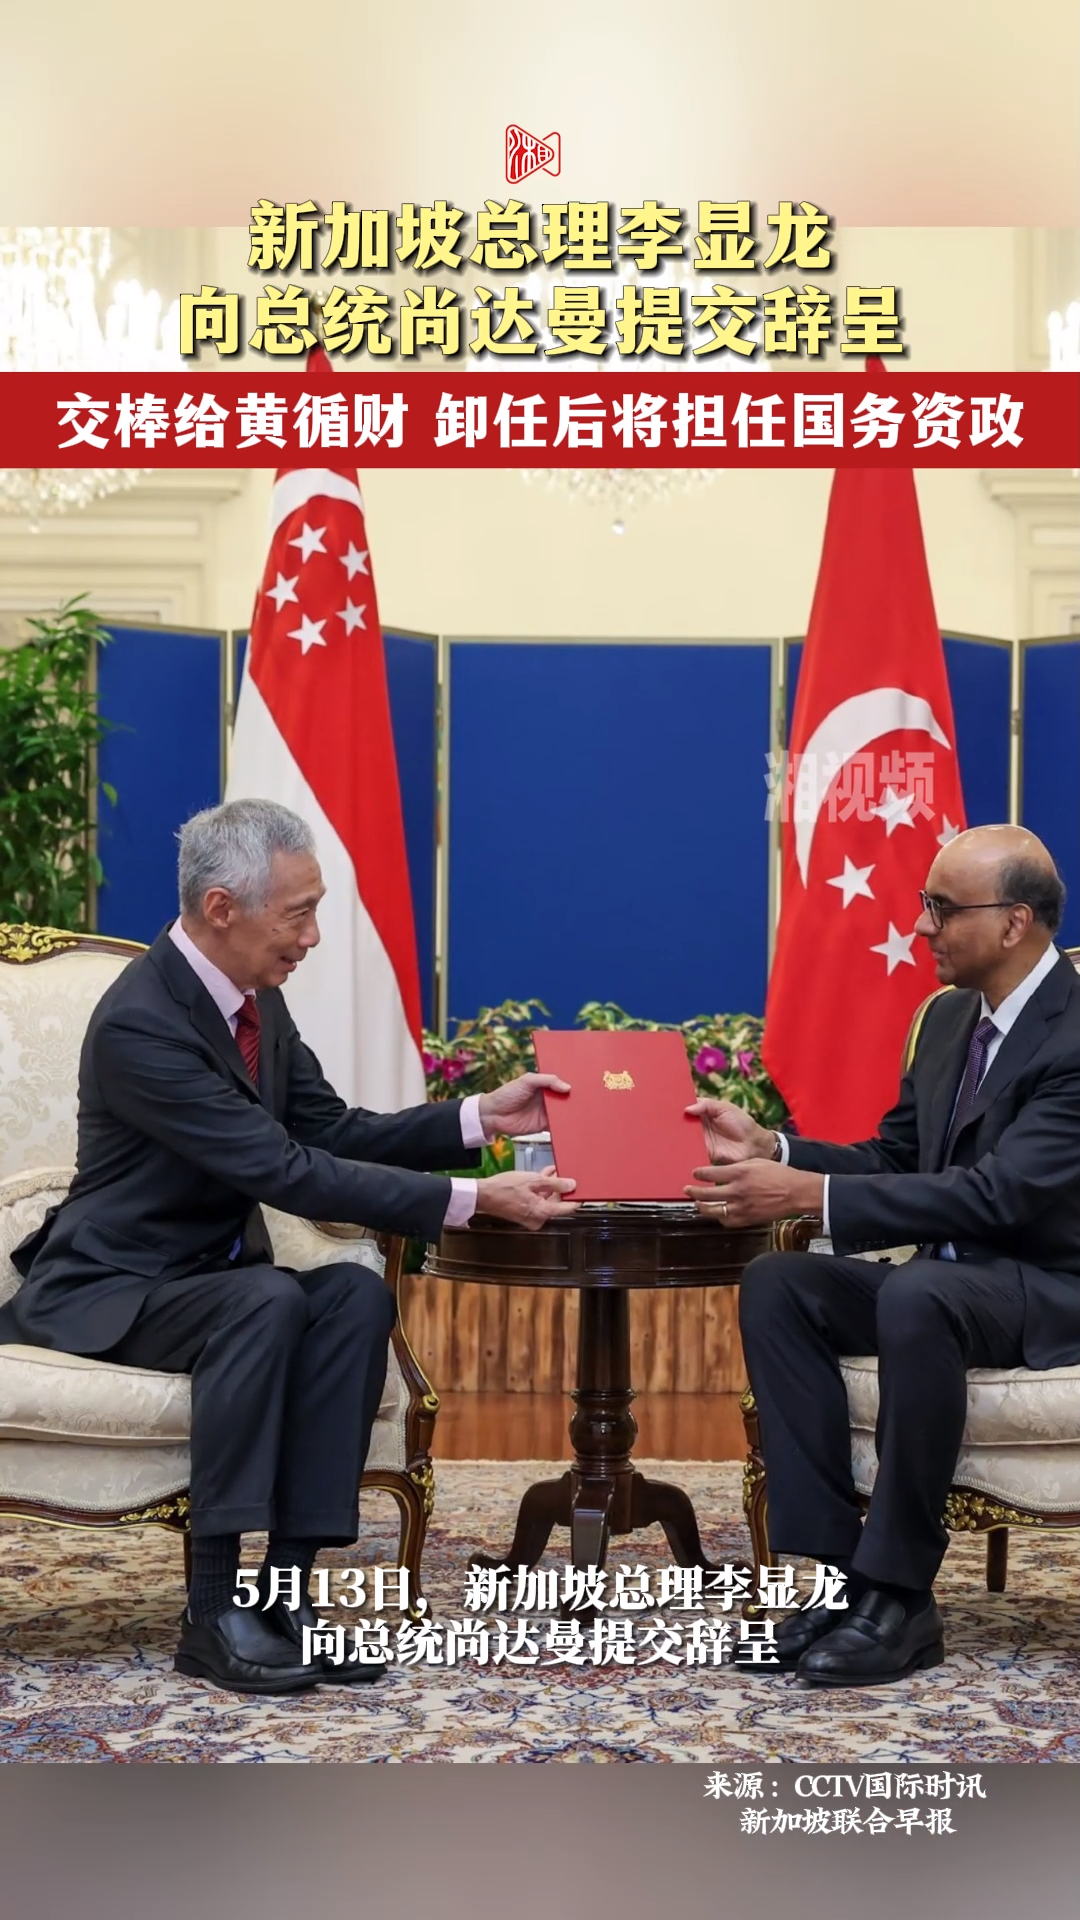 新加坡总理李显龙向总统尚达曼提交辞呈